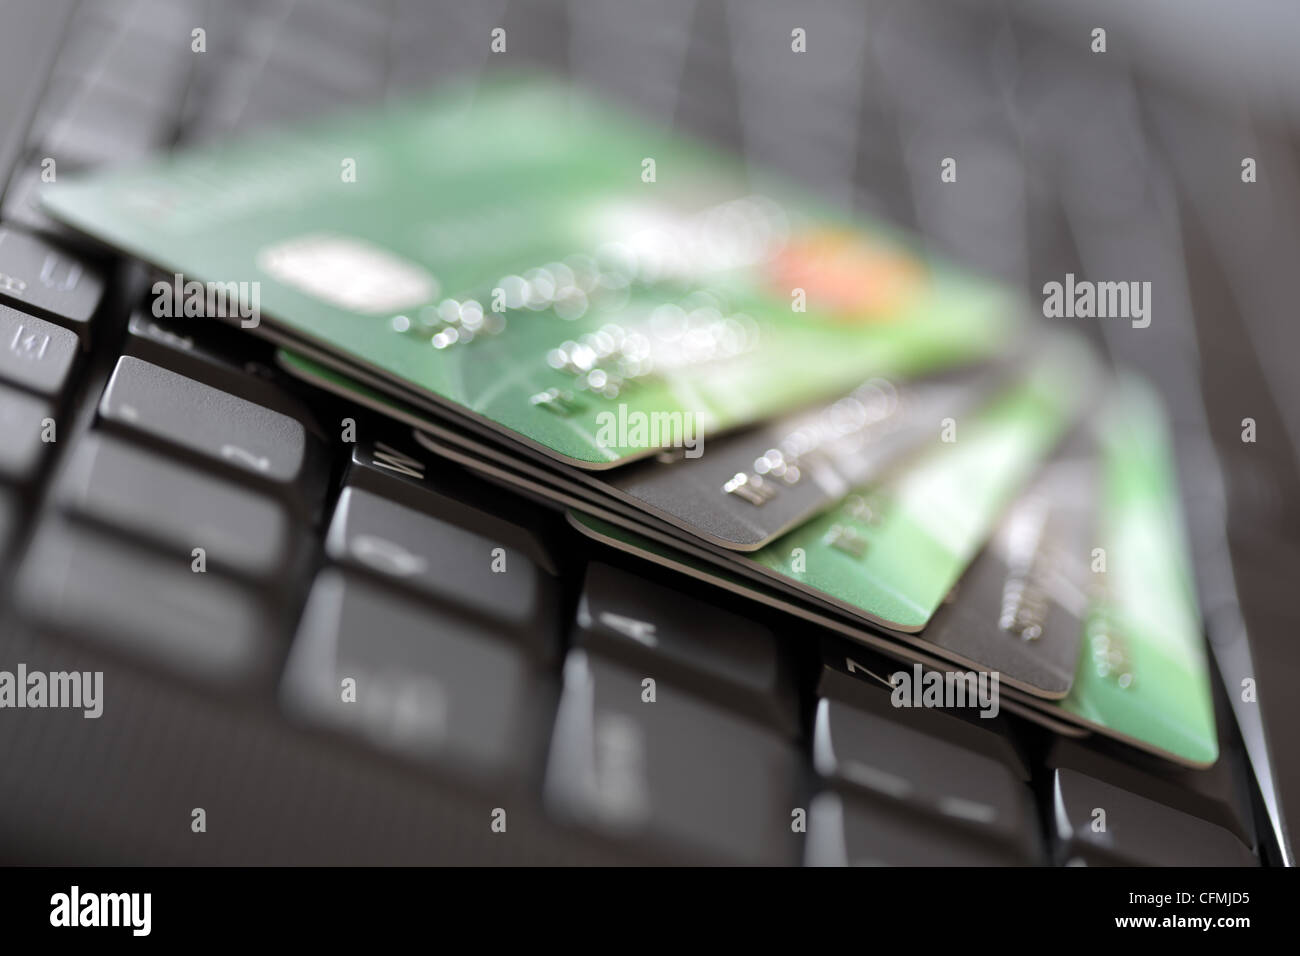 Las tarjetas de crédito en teclado de ordenador Foto de stock